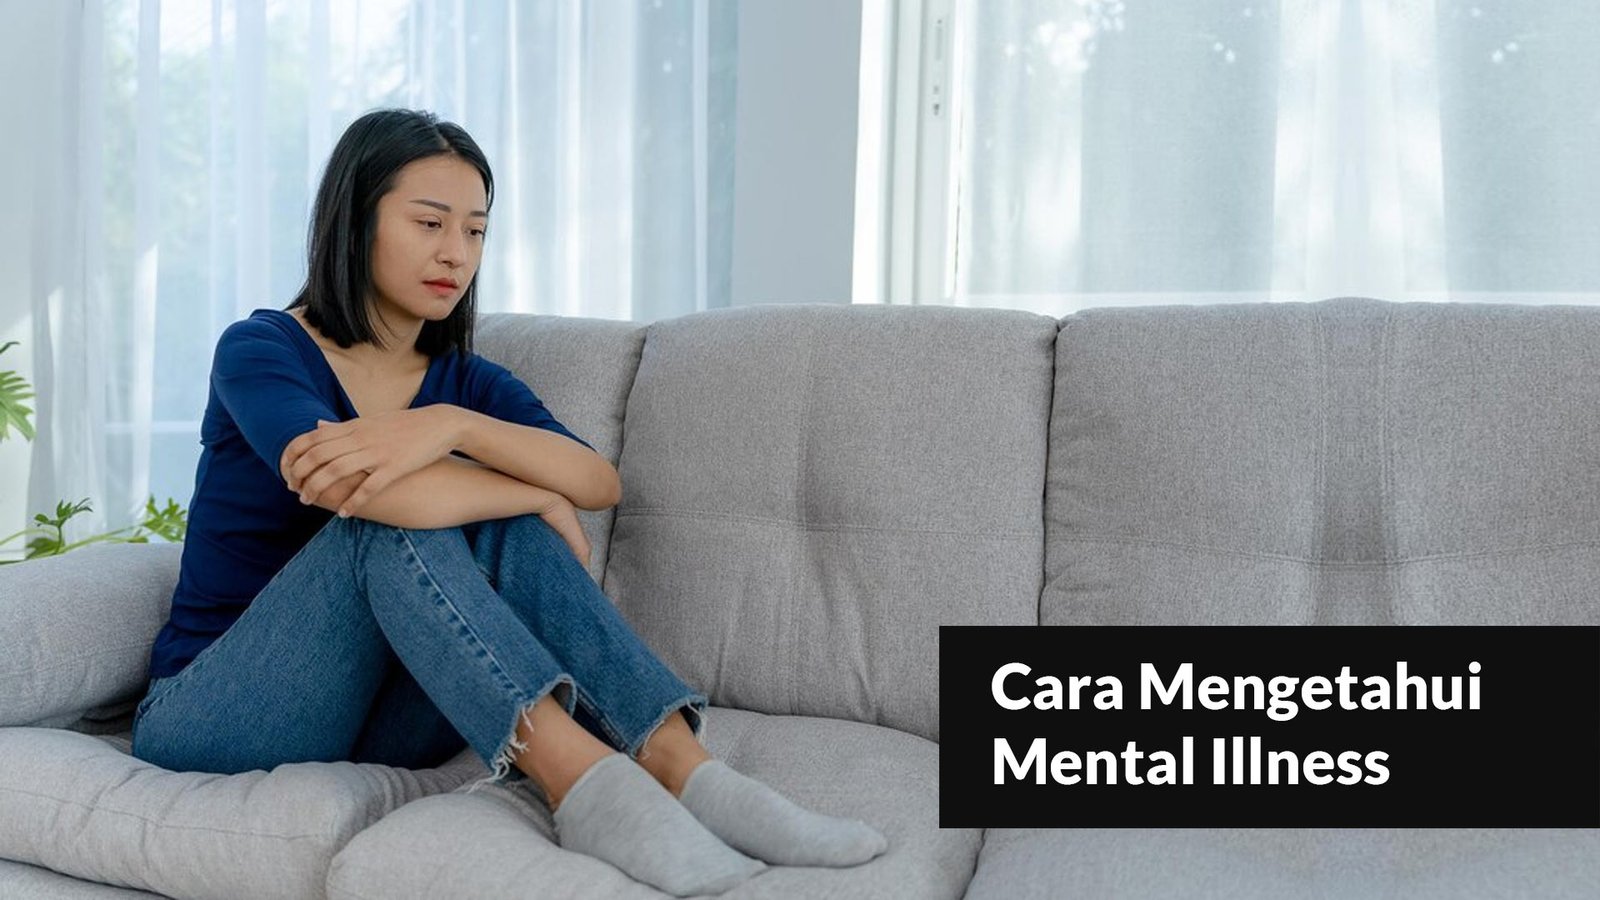 Cara Mengetahui Mental Illness